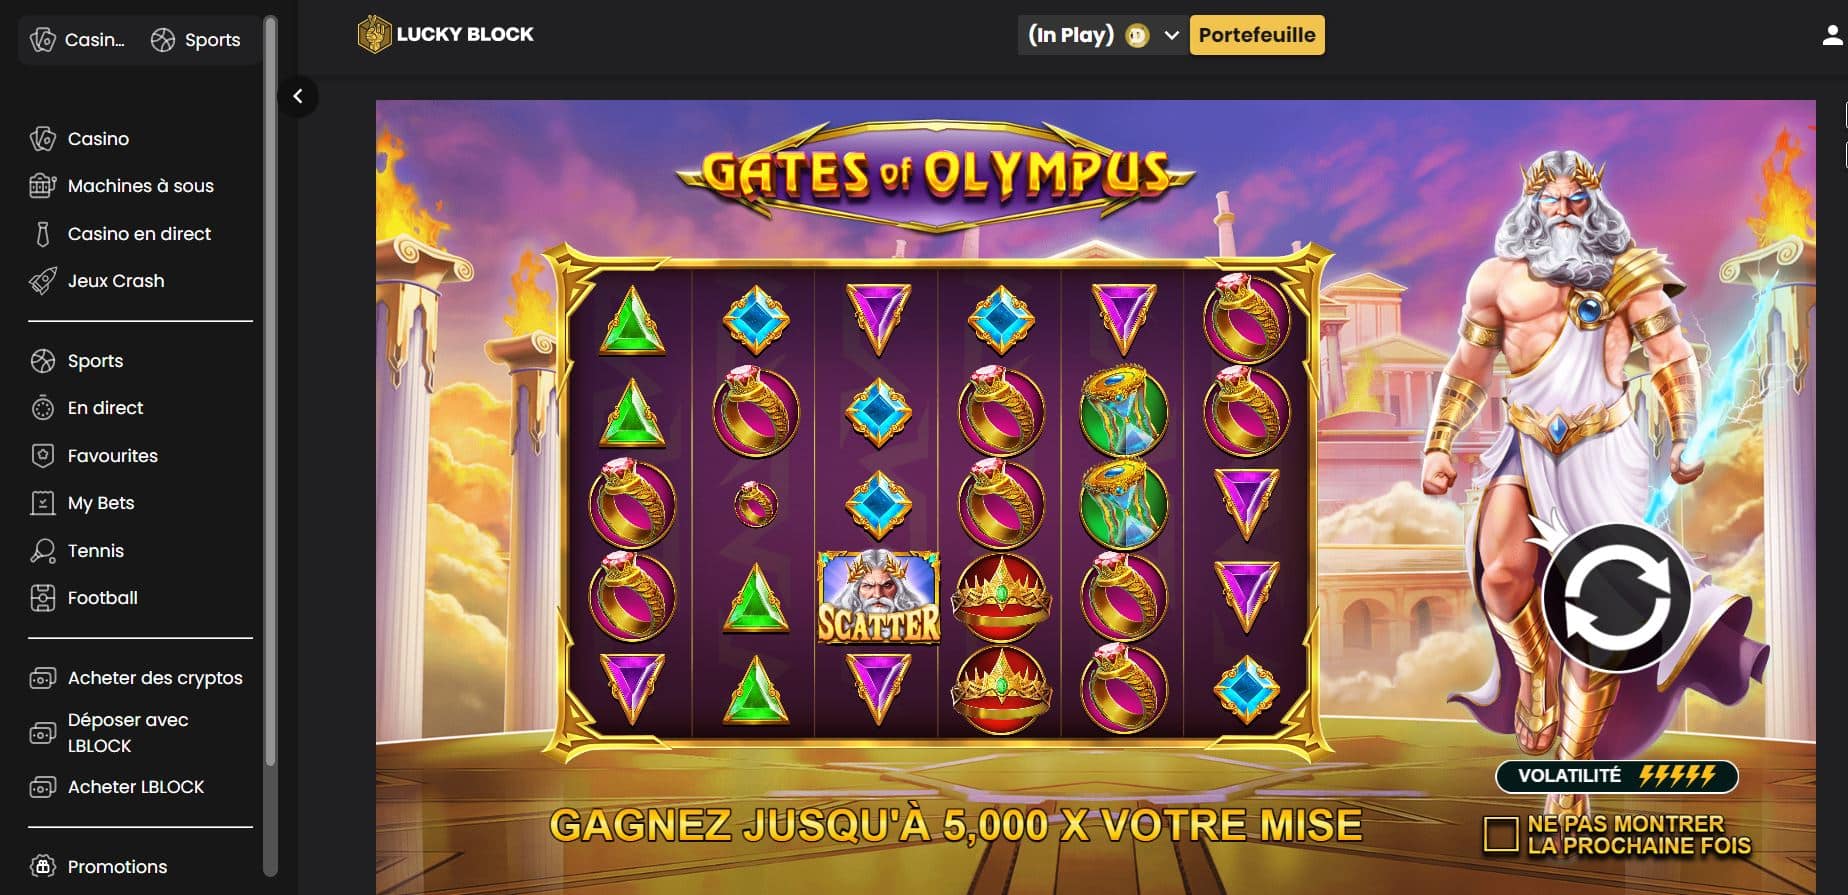 6. Sélectionner un jeu et commencer à jouer Lucky Block - Gates of Olympus - Casino eCheck